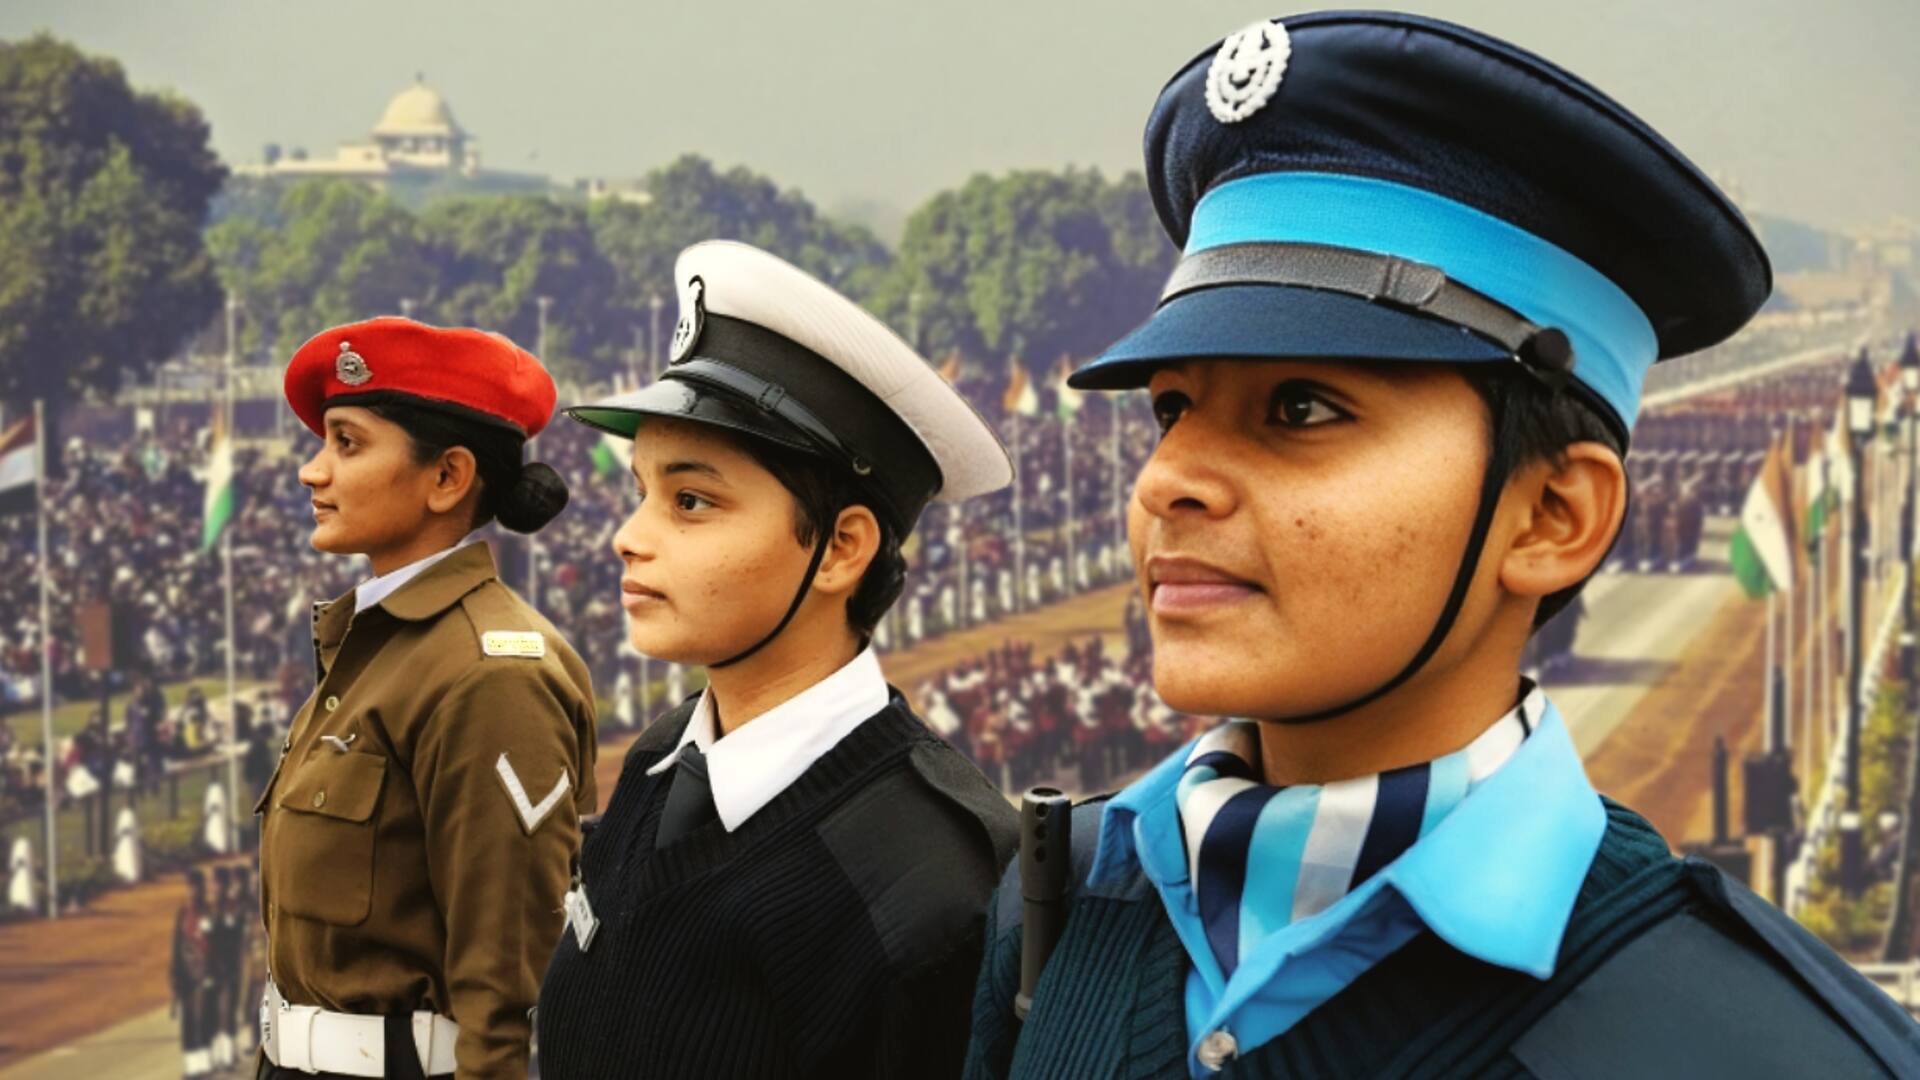 गणतंत्र दिवस परेड: पहली बार वायुसेना की अग्निवीर महिला सैनिक करेंगी कर्तव्य पथ पर कदमताल